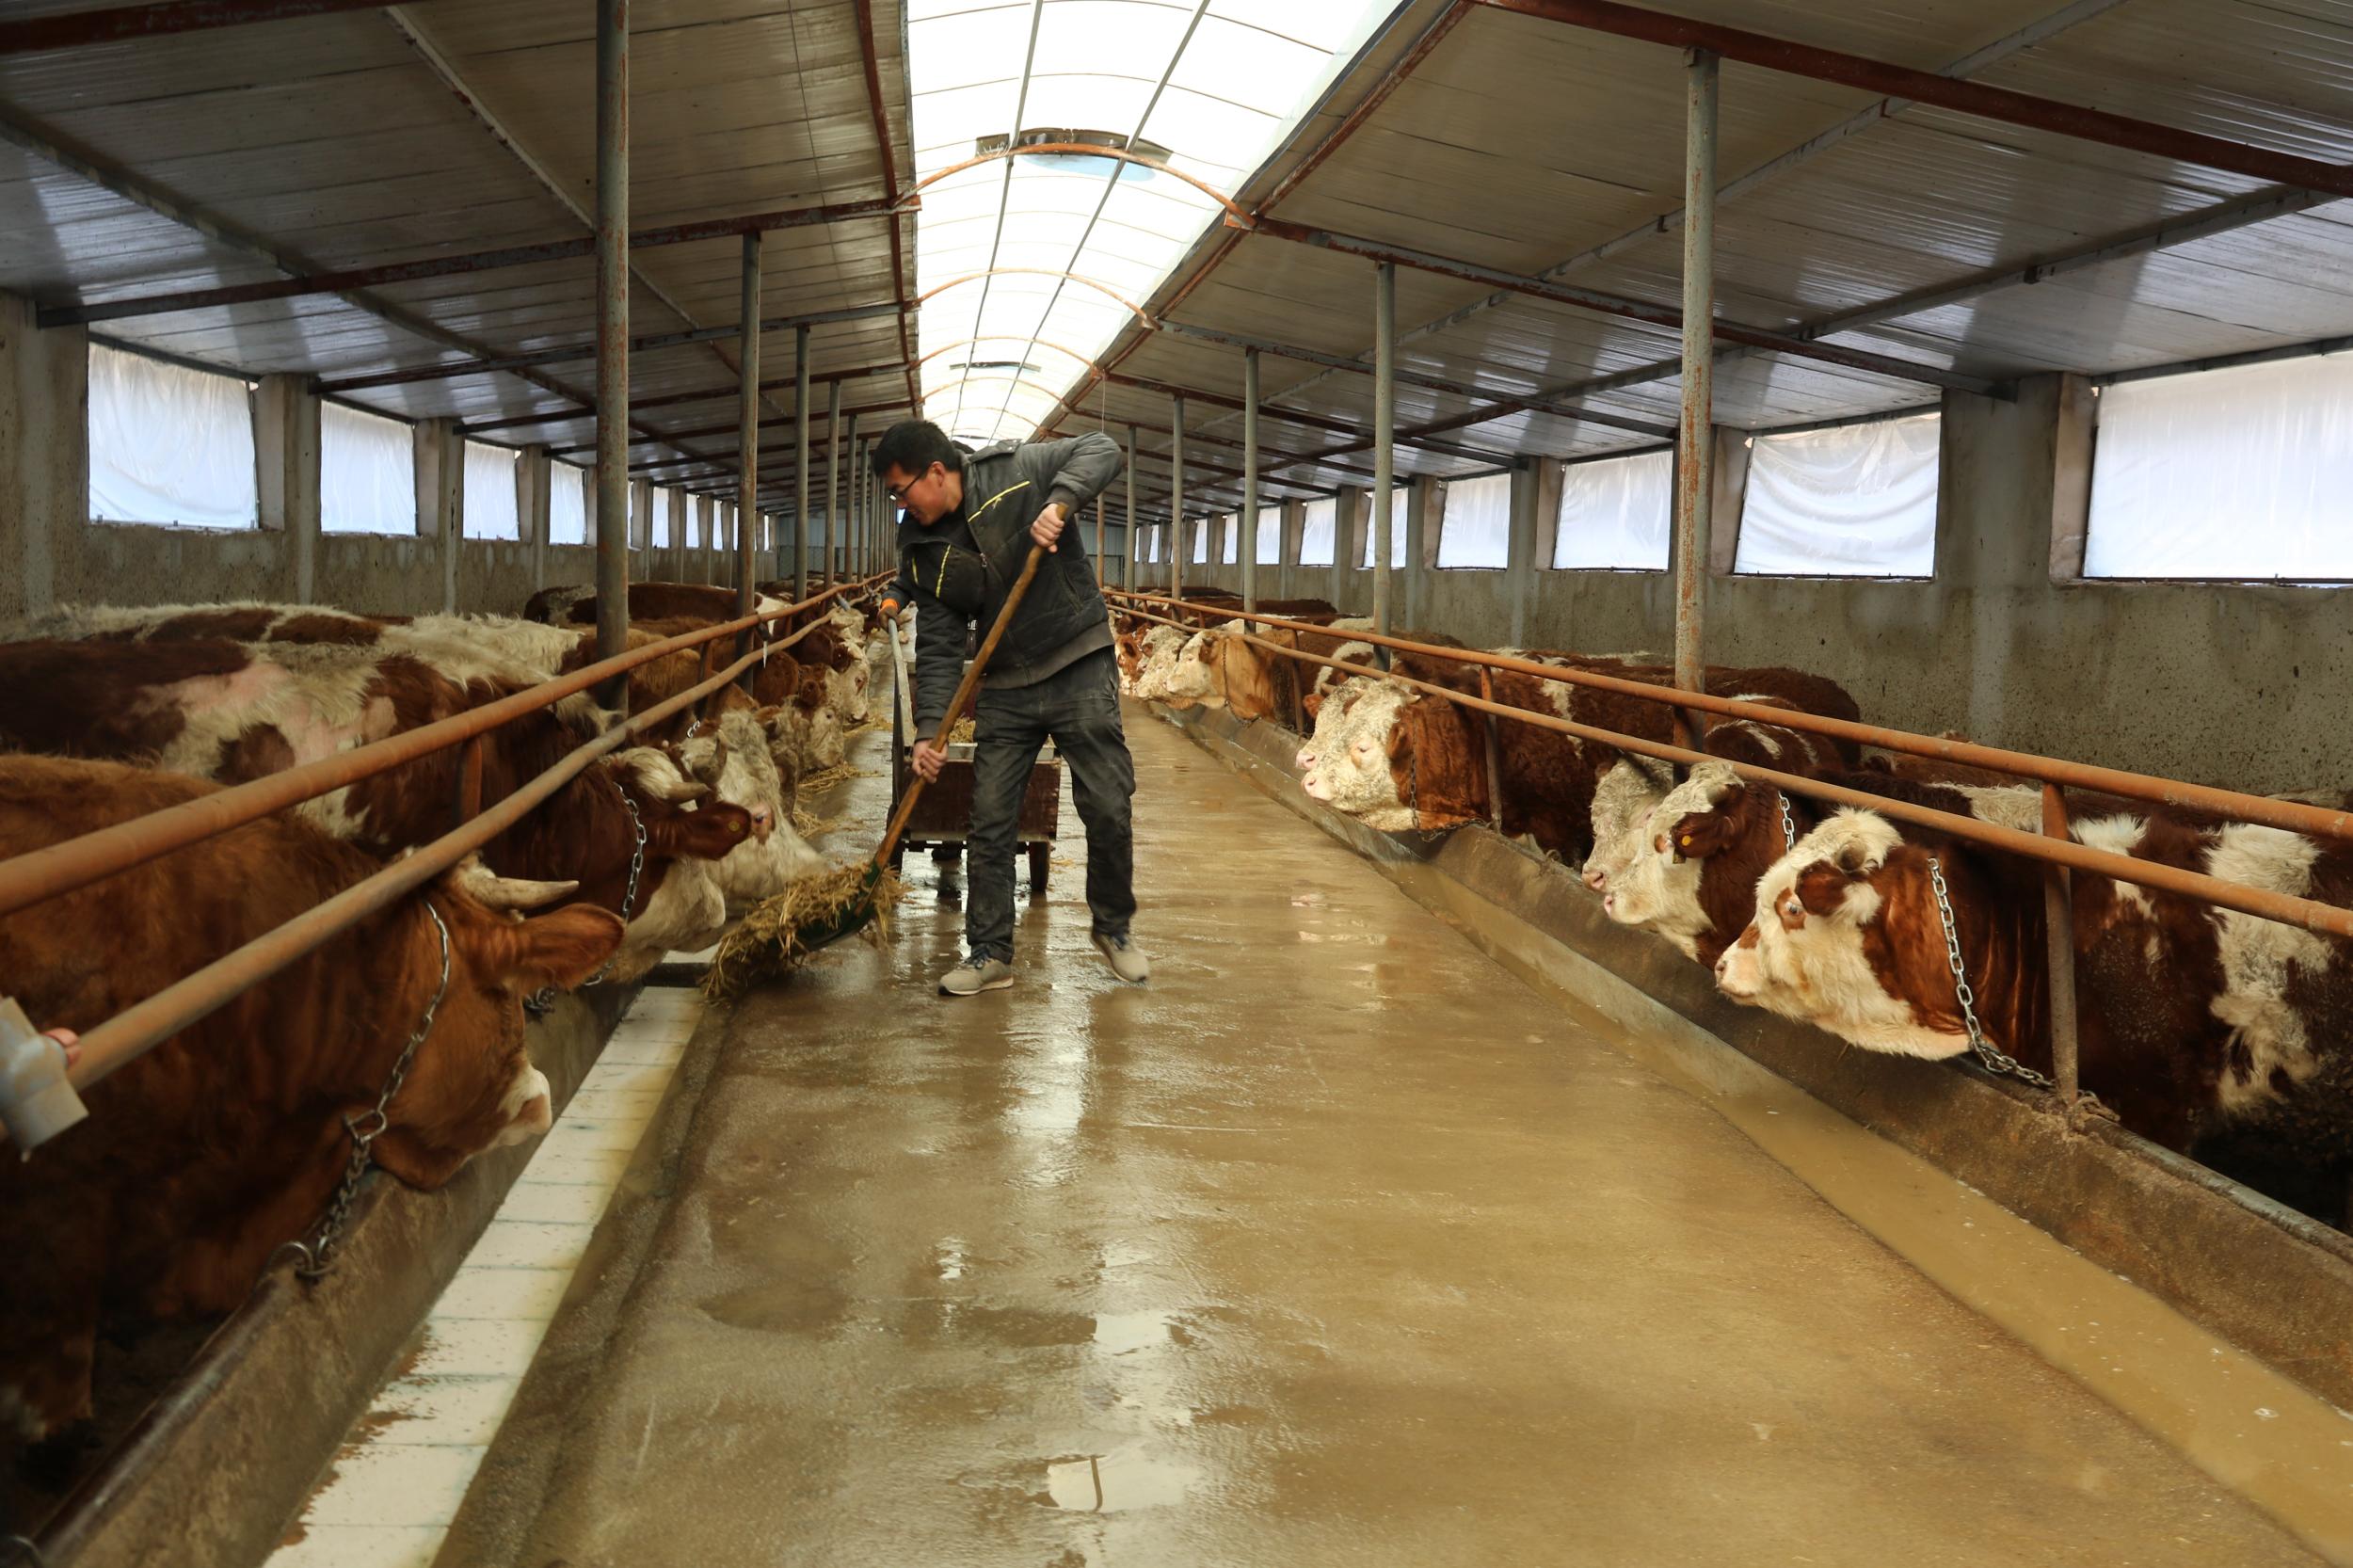 春季养奶牛保证五个最佳温度